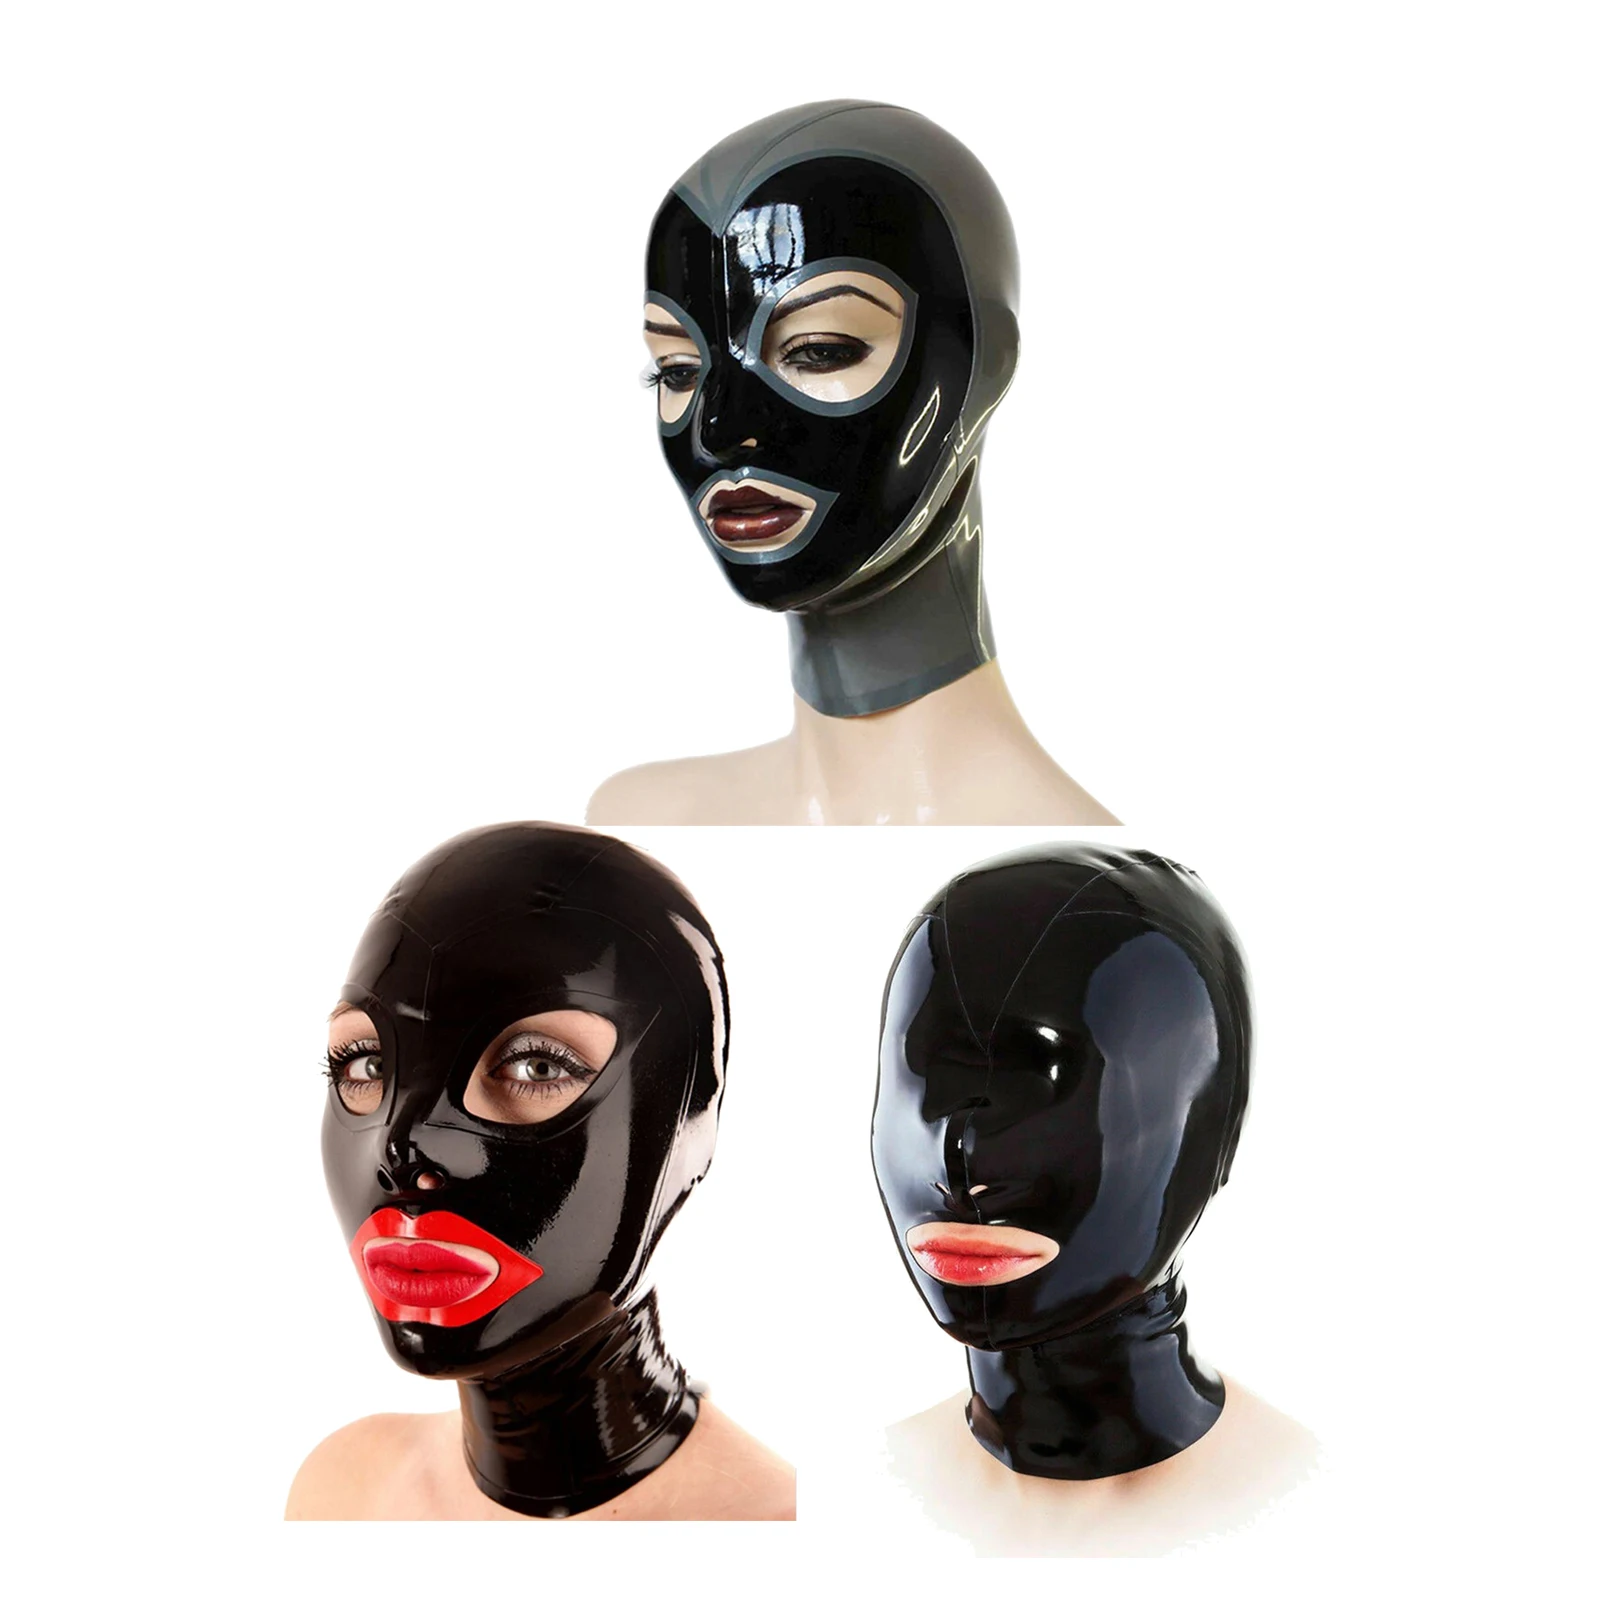 

Латексная маска унисекс, блестящий головной убор с металлическим покрытием и открытыми глазами, на все лицо, для женщин и мужчин, костюм для ролевых игр для пар